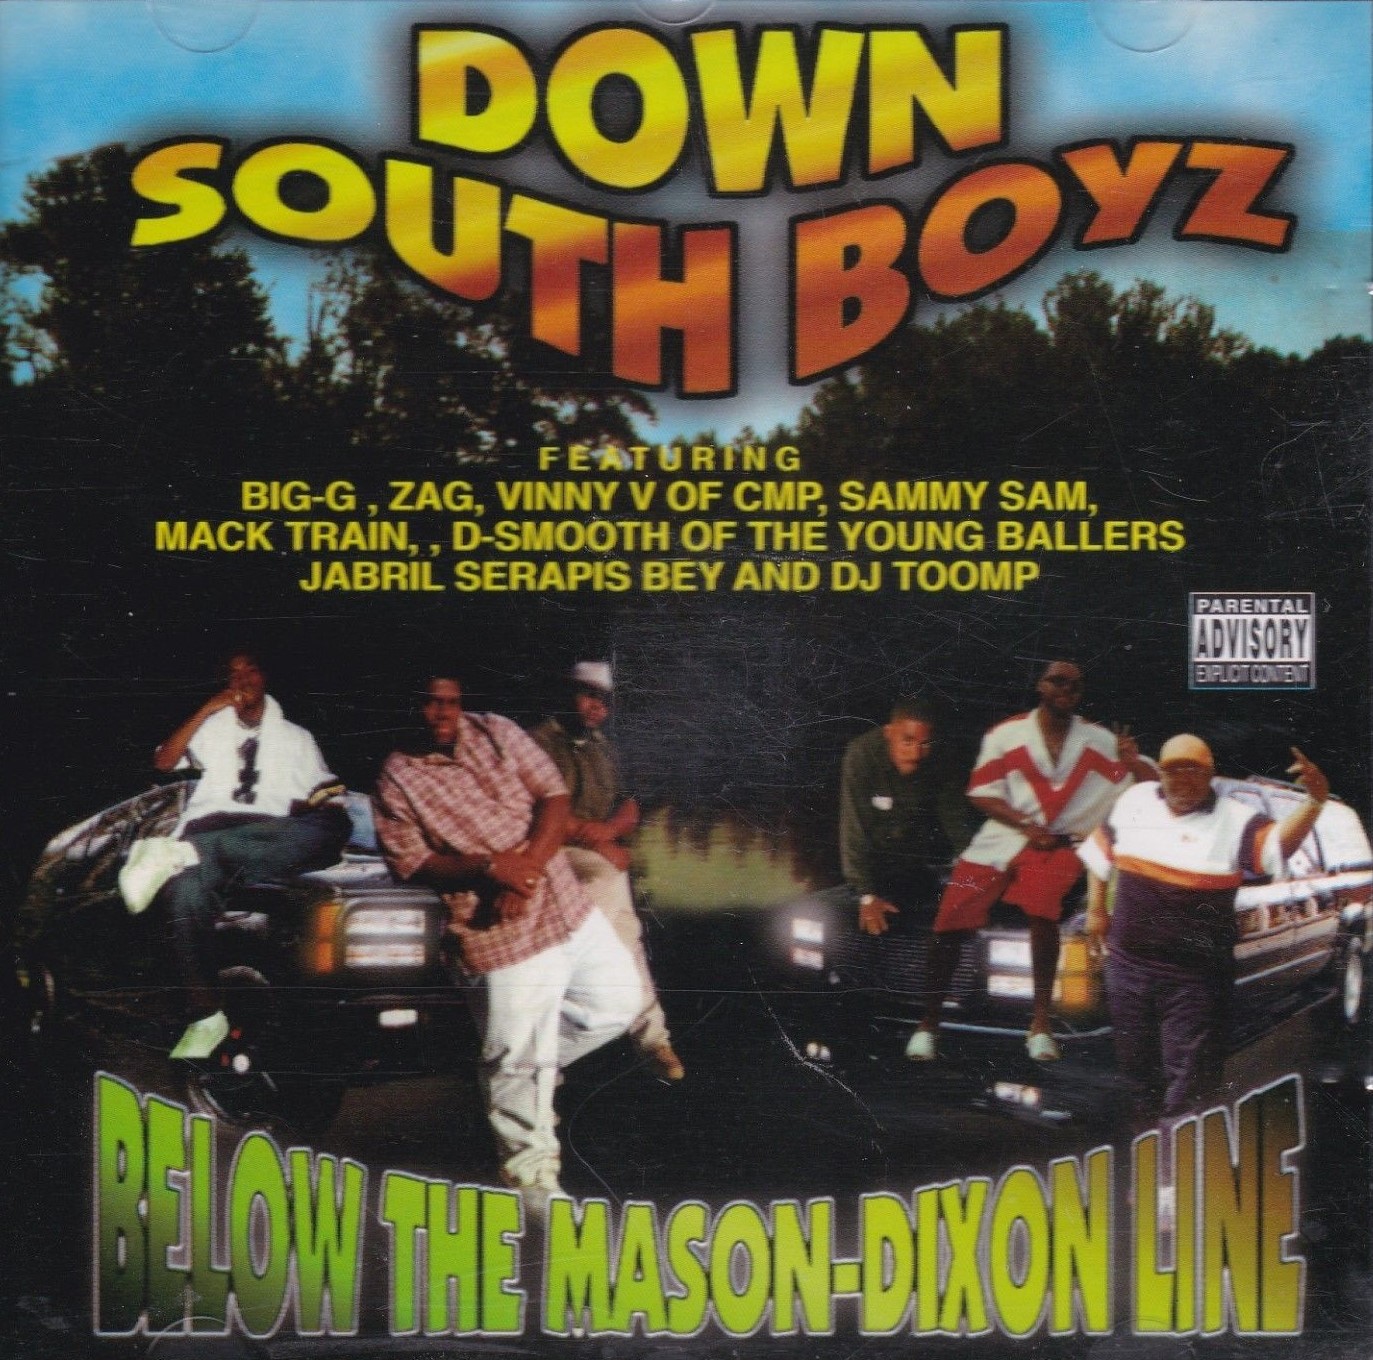 Below The Mason-Dixon Line by Down South Boyz (CD 1999 Soul